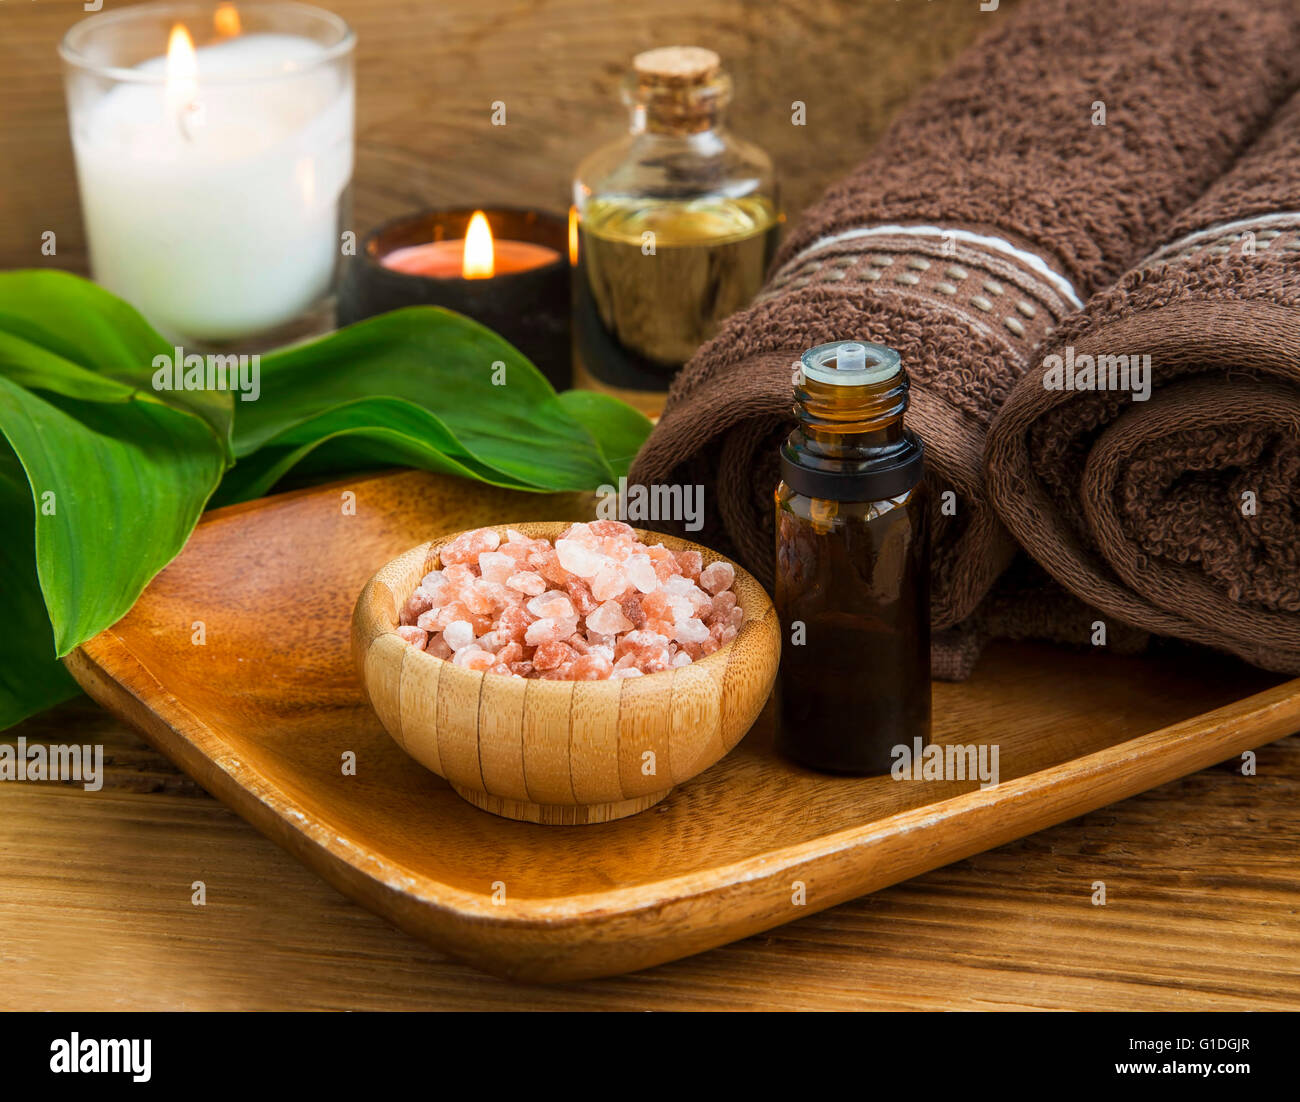 Tratamiento de Spa con sal y aceite, con velas y toallas de algodón Foto de stock